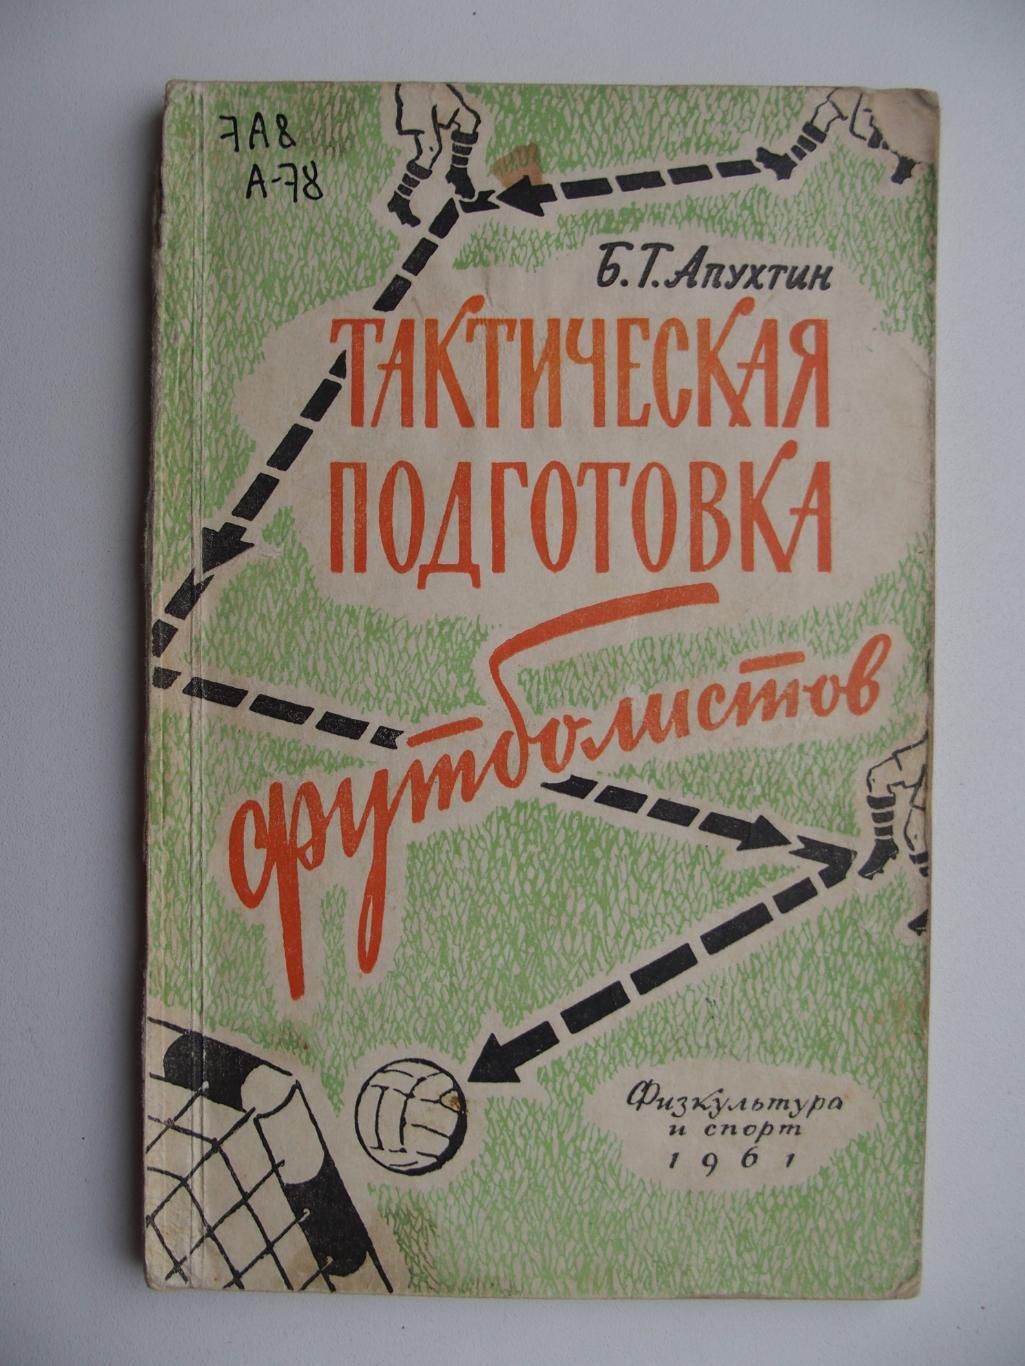 Тактическая подготовка футболистов. Б. Г. Апухтин (1961).